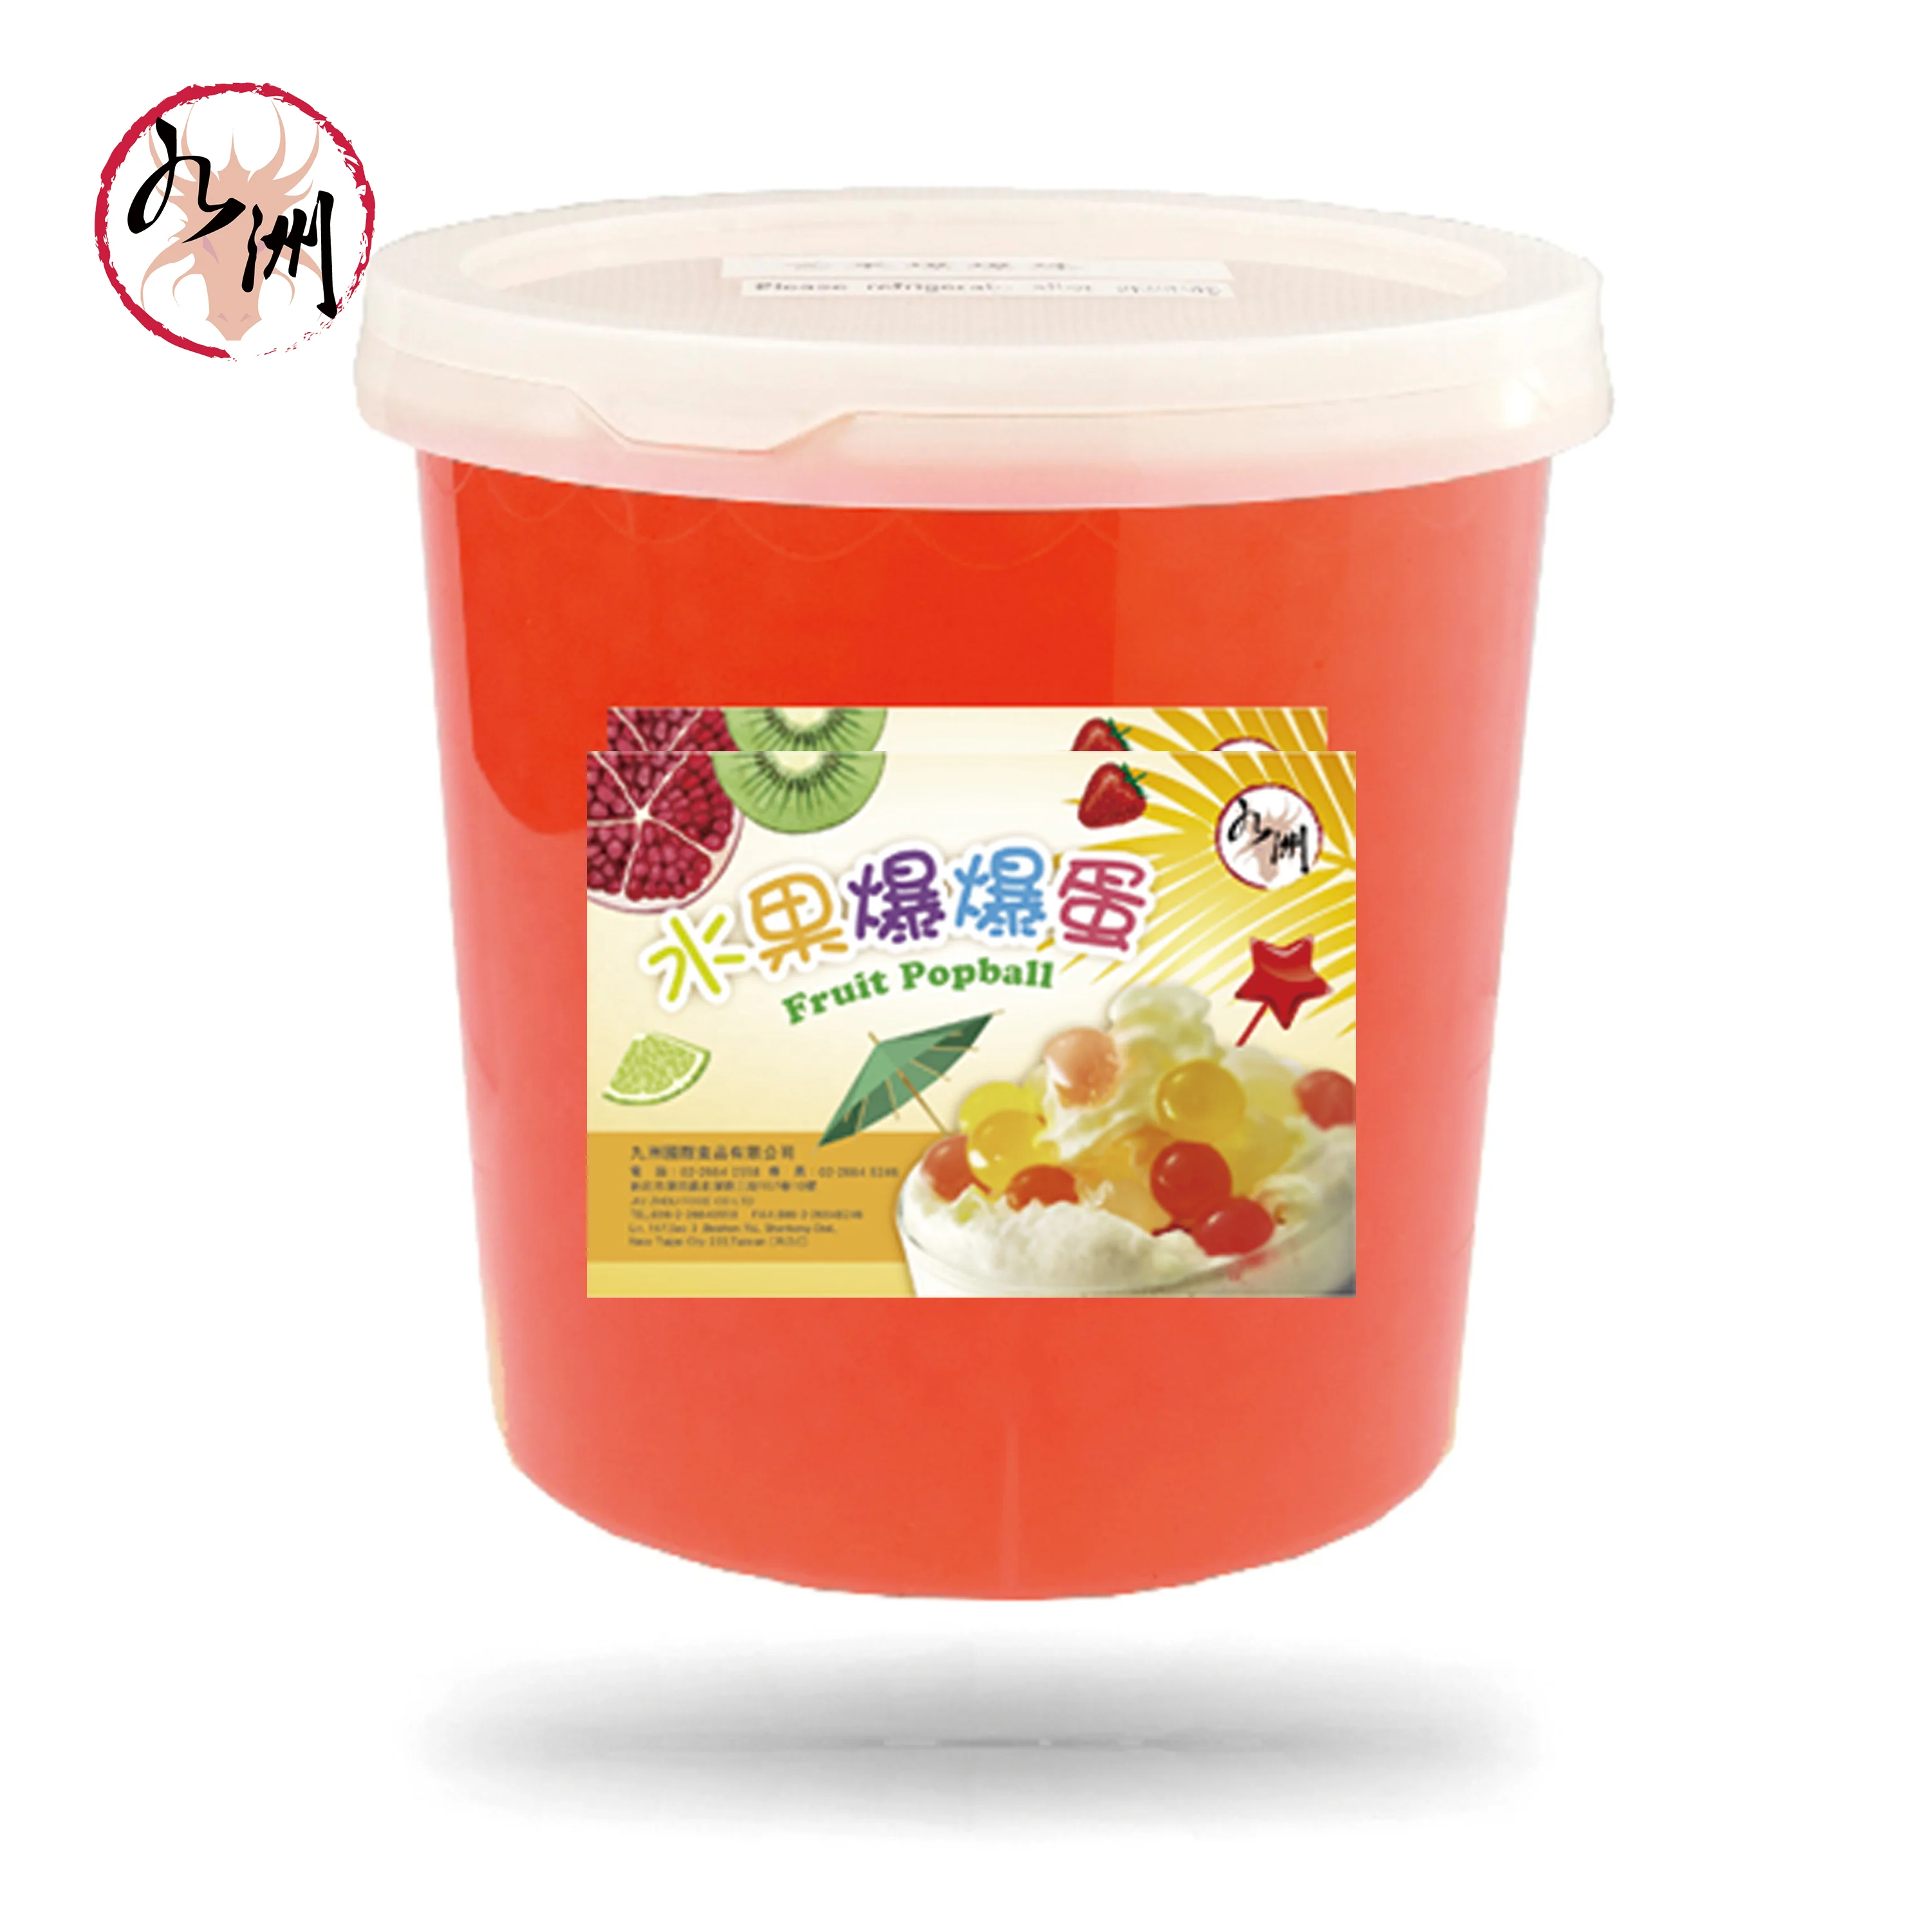 台湾バブルティーサプライヤー ピーチフルーツポップボールボバ Buy ポップボールバブル茶 バブルティートッピング バブルティーポップボバ Product On Alibaba Com